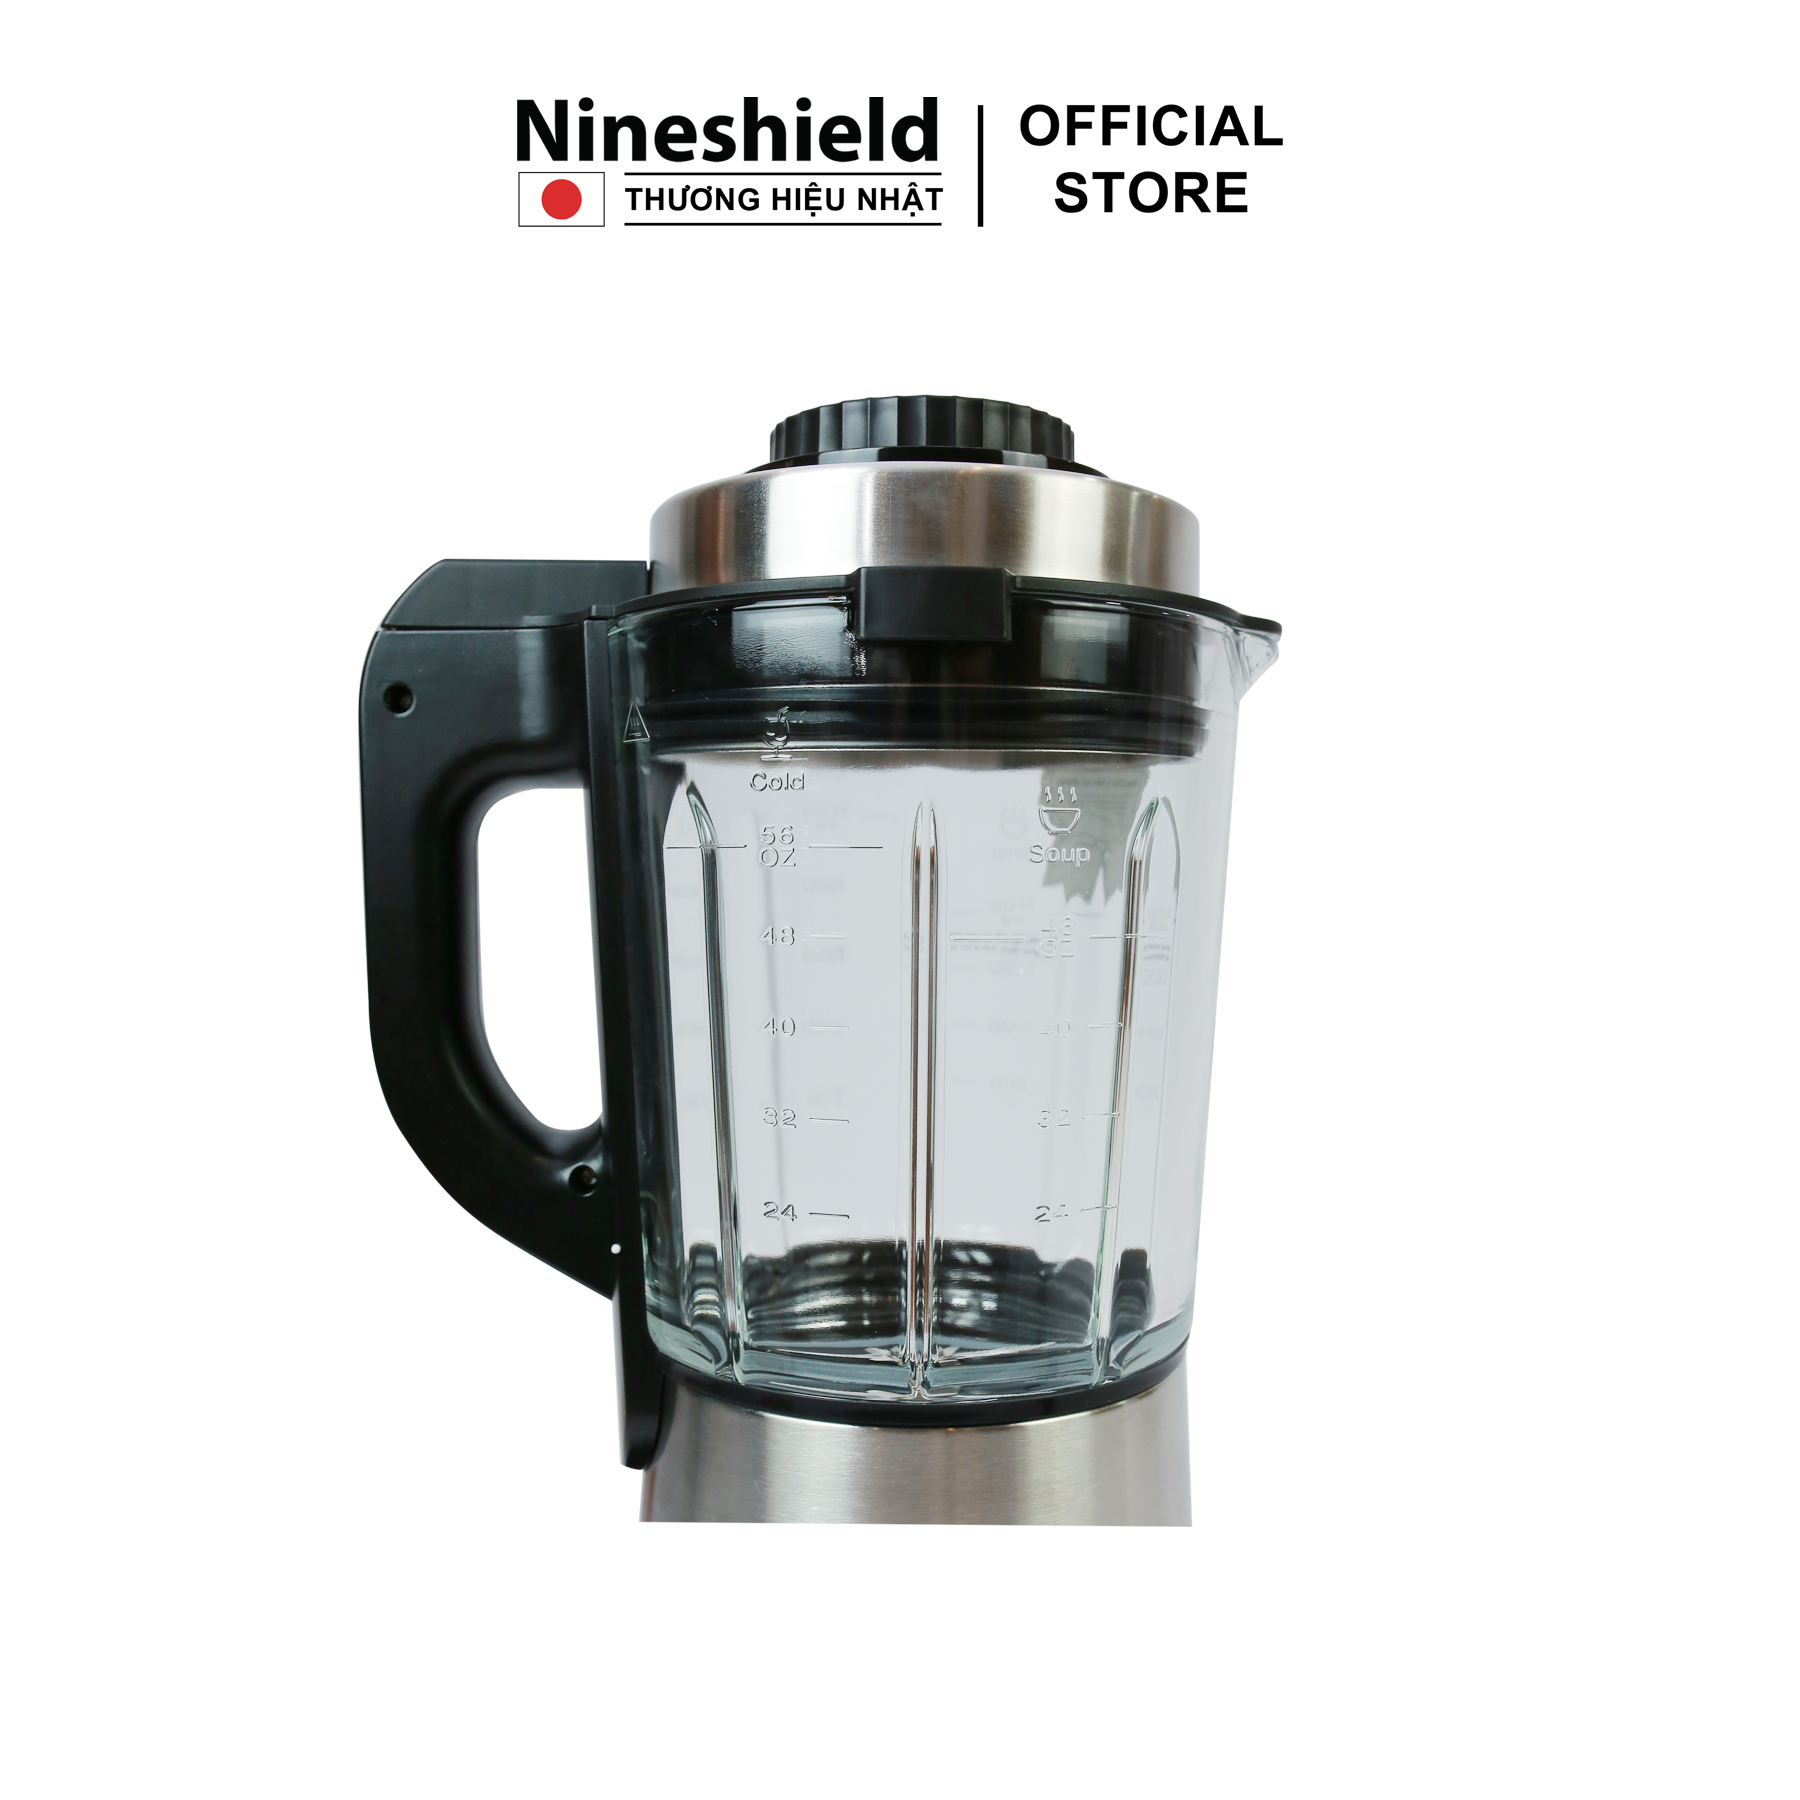 Máy làm sữa hạt Nineshield KB505 - Hàng chính hãng